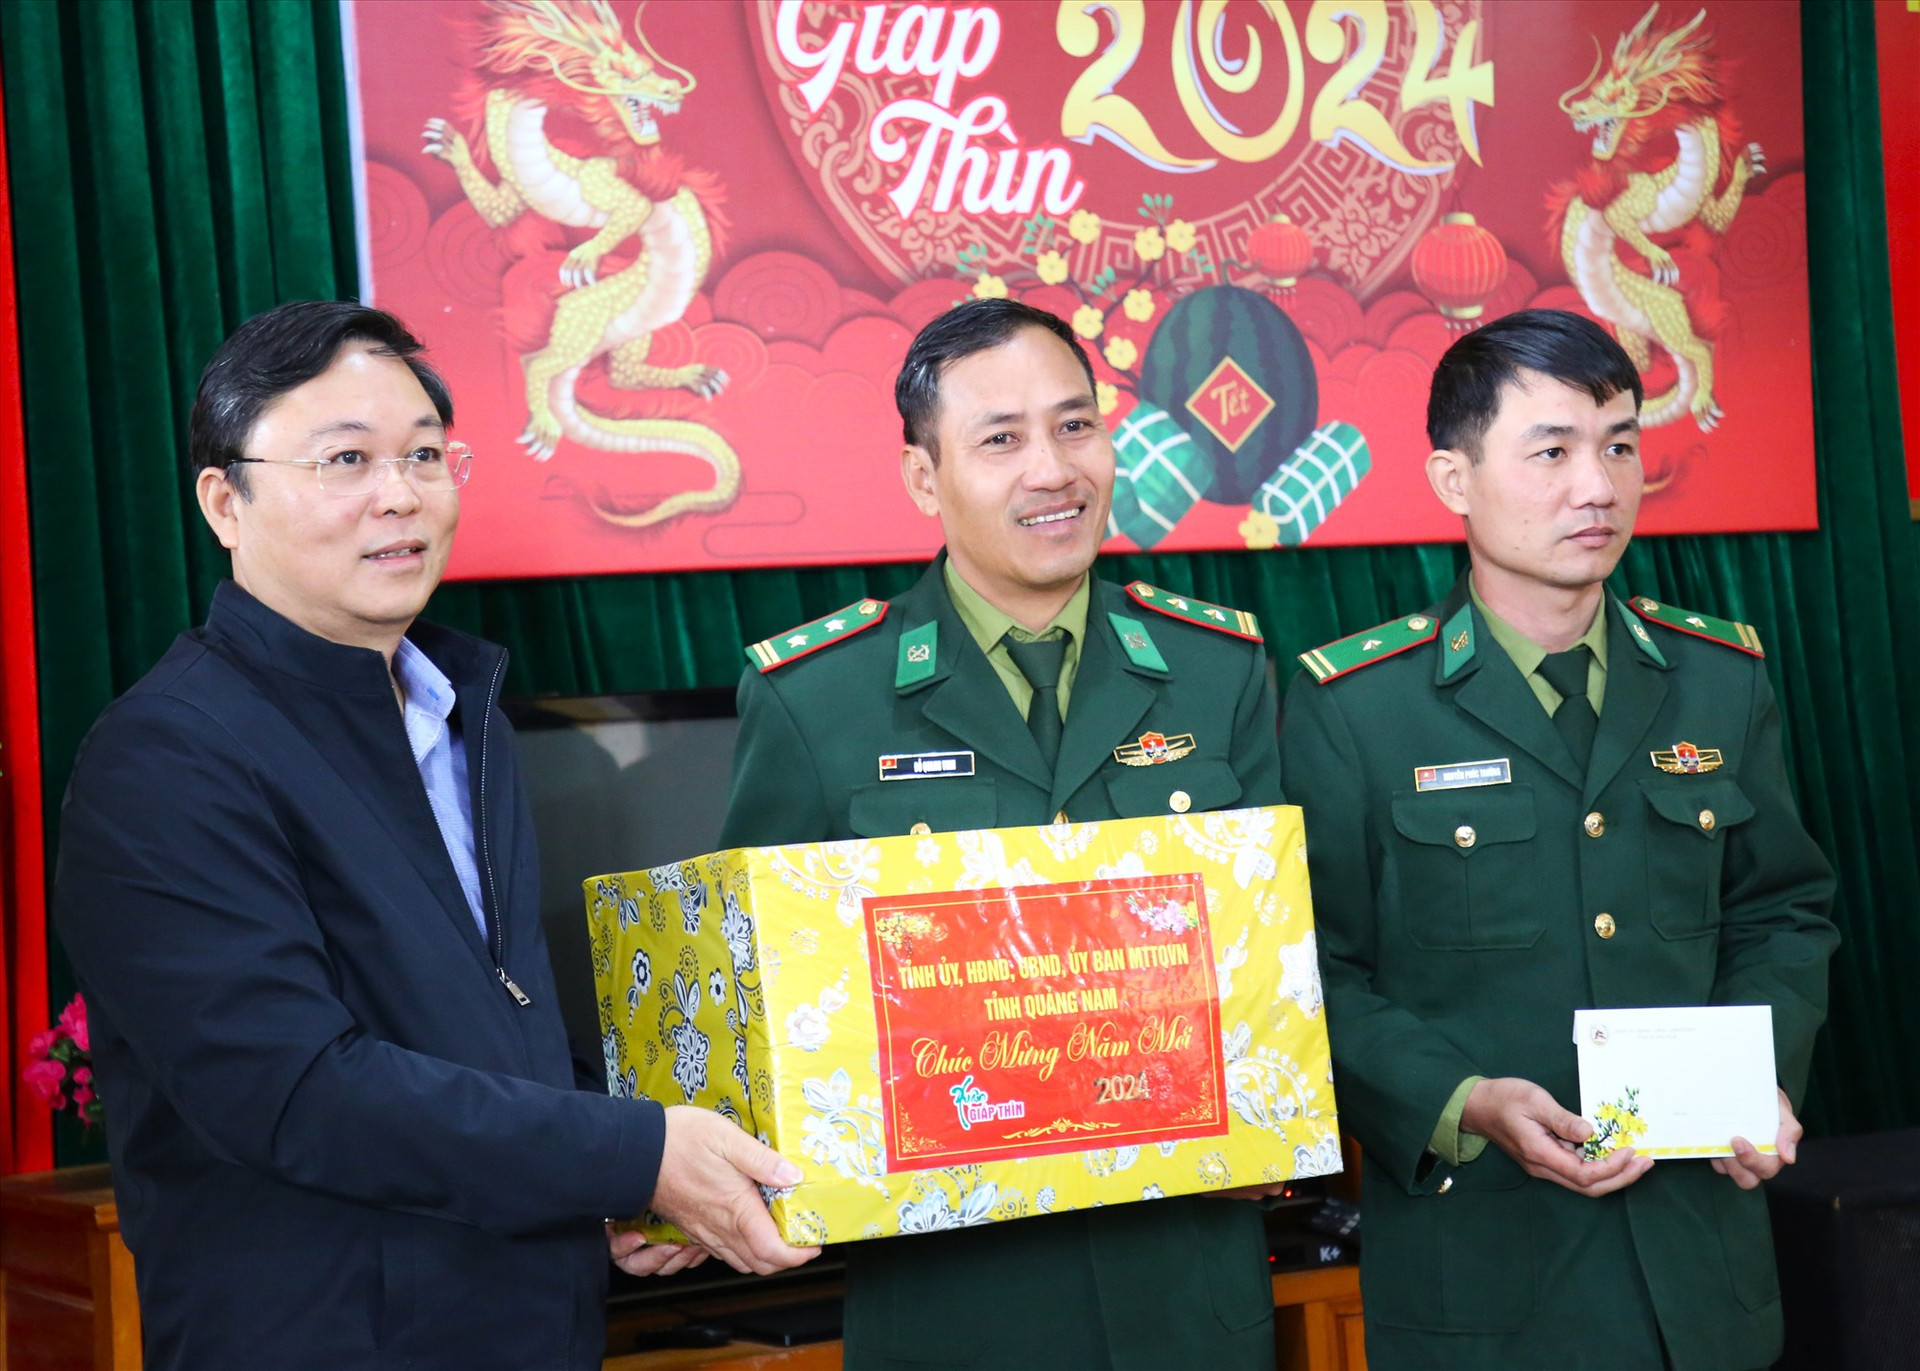 Chủ tịch UBND tỉnh trao quà động viên cán bộ chiến sĩ Đồn Biên phòng Ga Ry. Ảnh: A.N